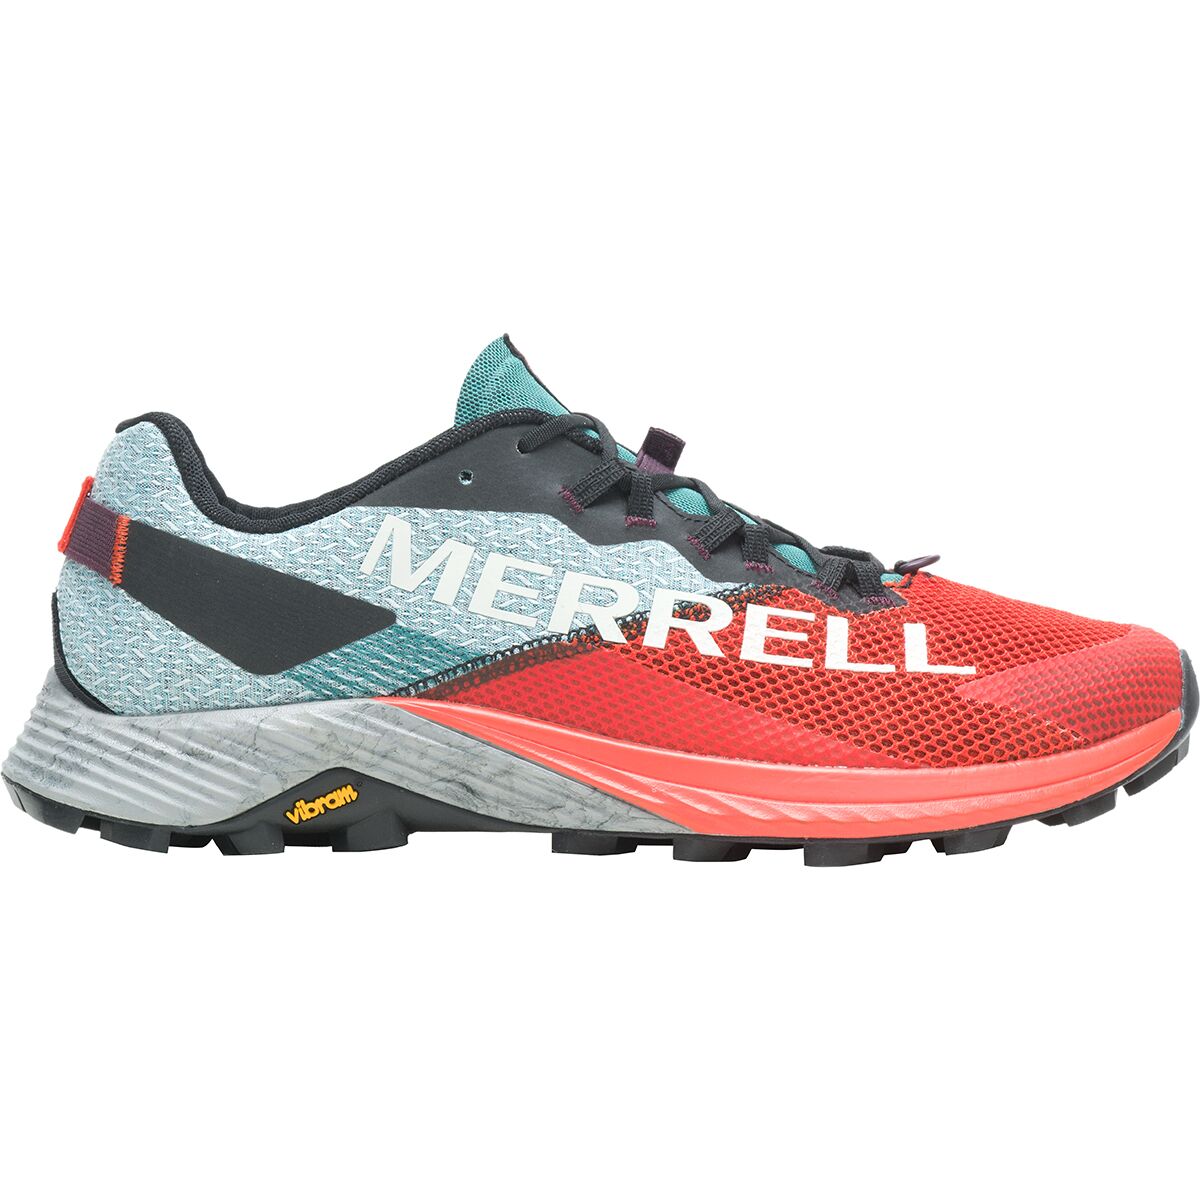 Merrell Mtl Long Sky 2 Trail Running Shoe - Women's